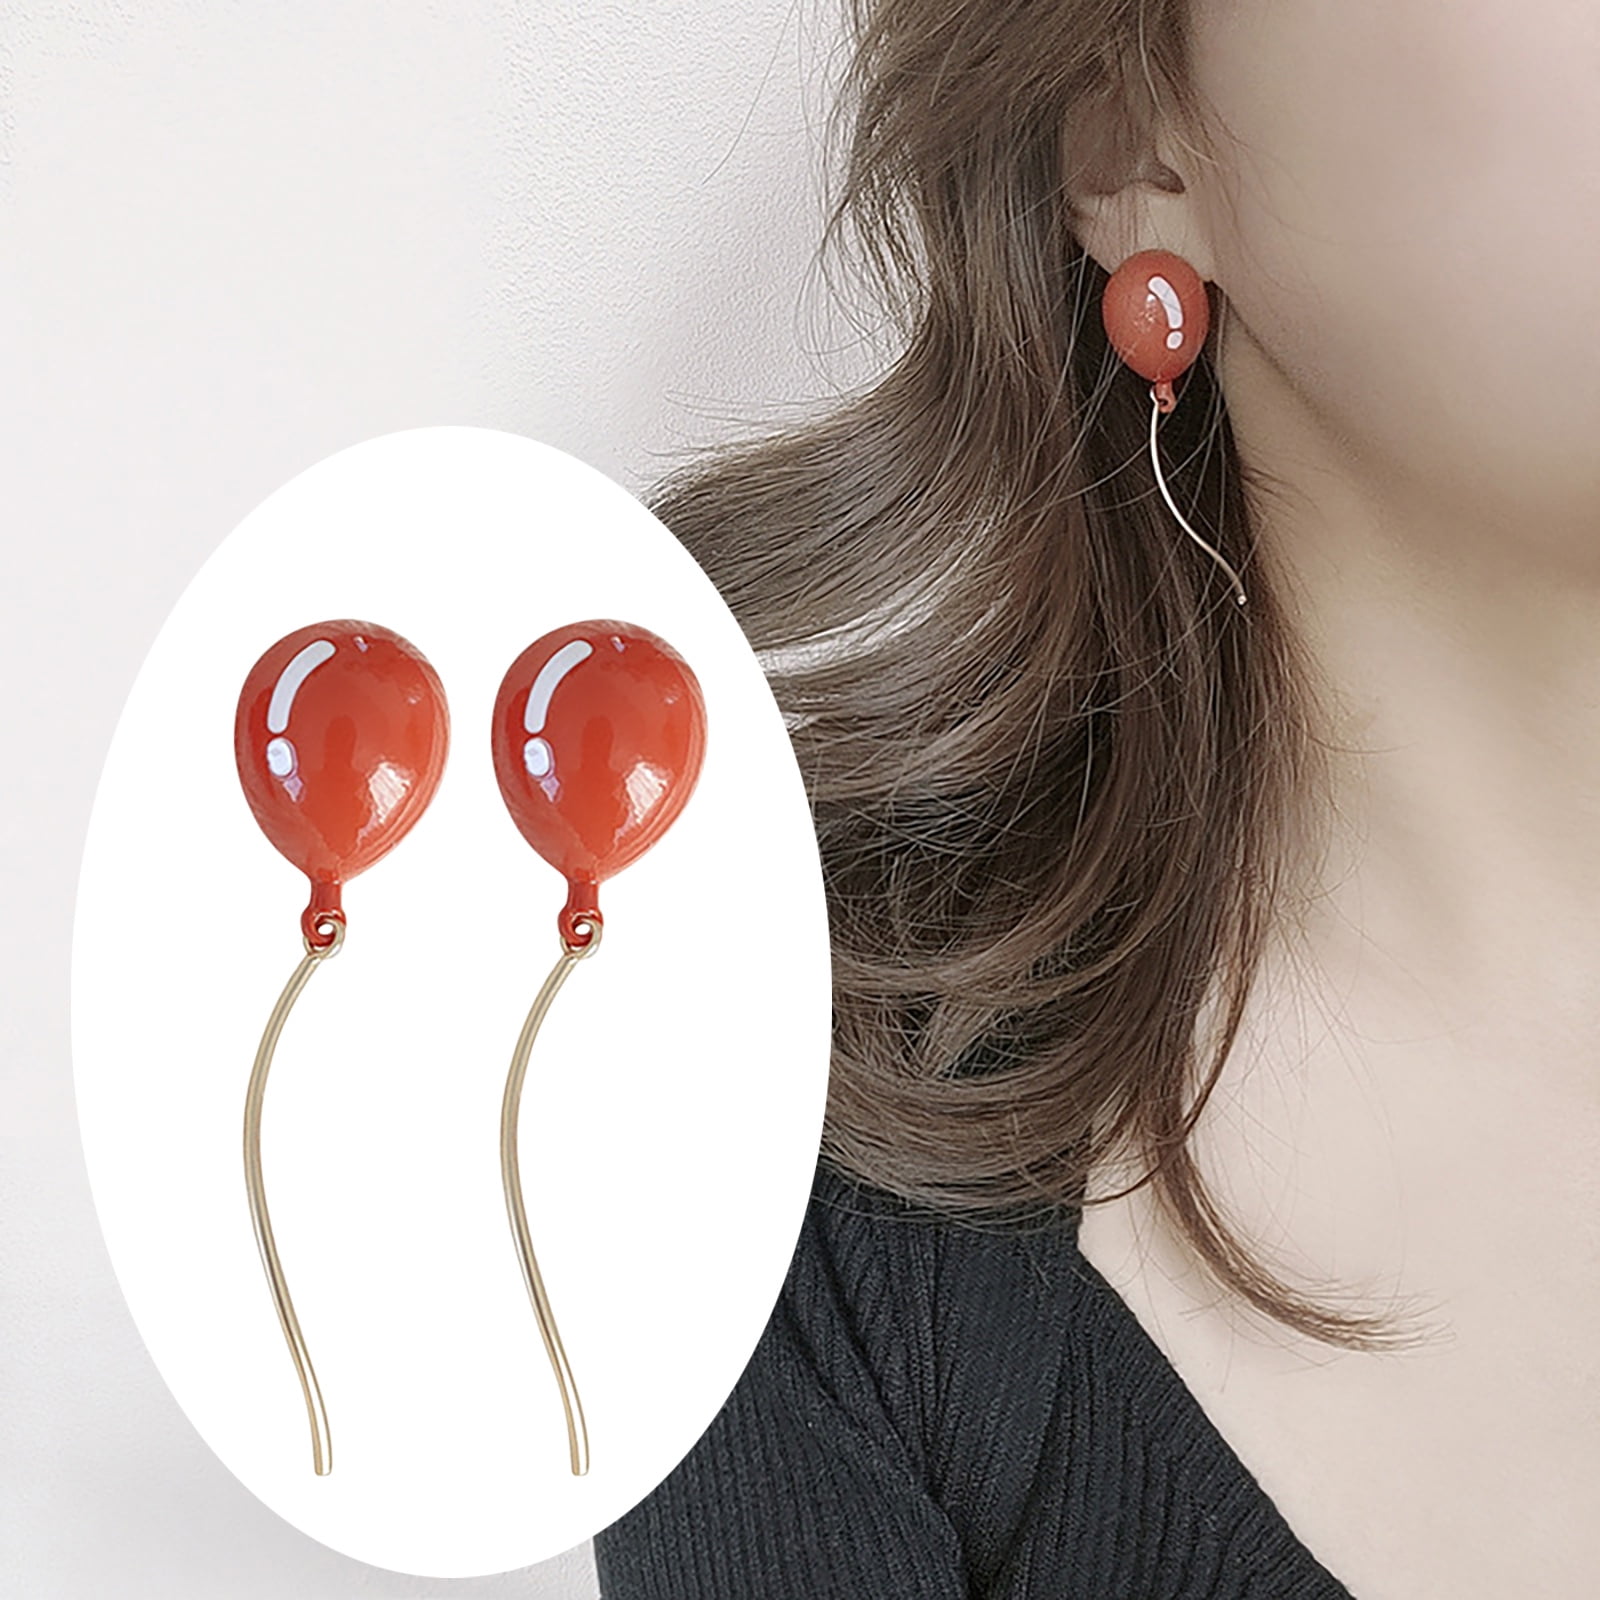 2Pcs Fashion Elf Ear Cuffs Ear Hook Clip On Earrings Jewelry Gift for Women  - Walmart.com